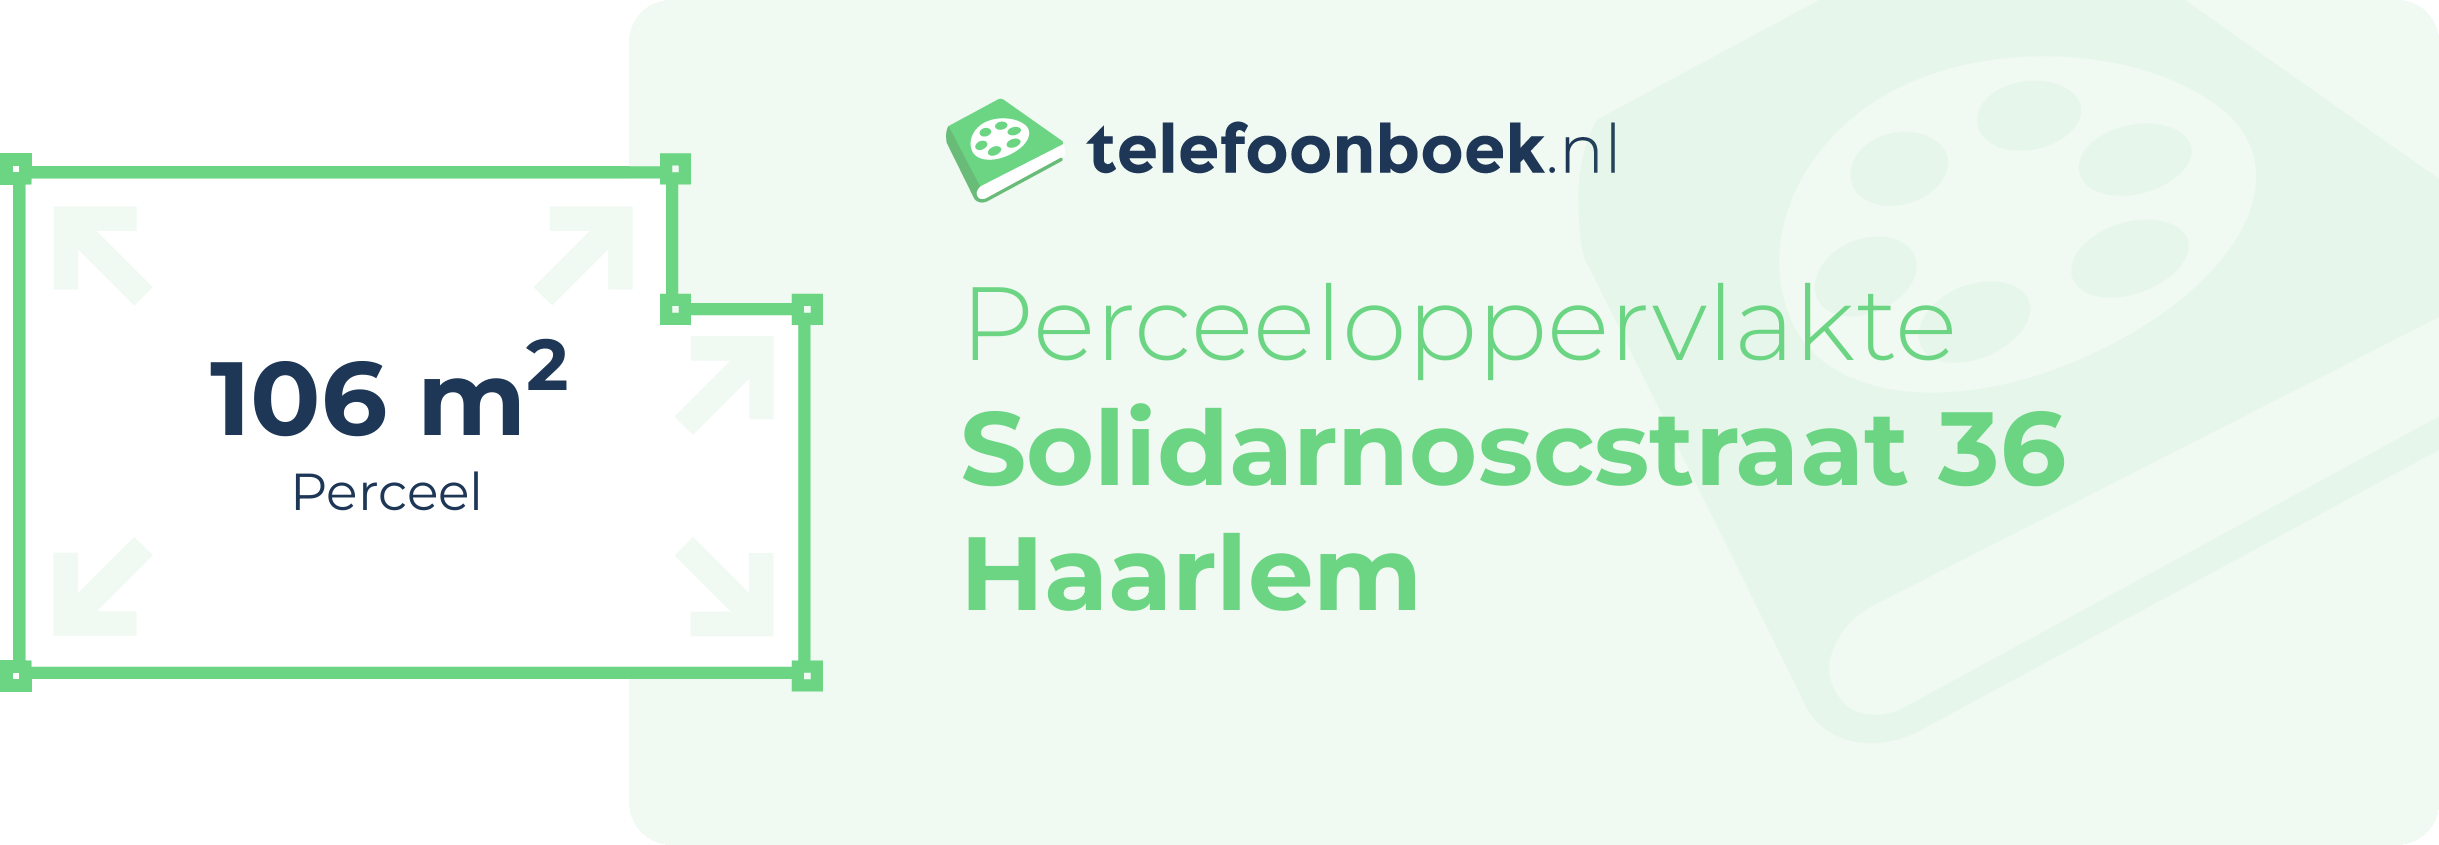 Perceeloppervlakte Solidarnoscstraat 36 Haarlem